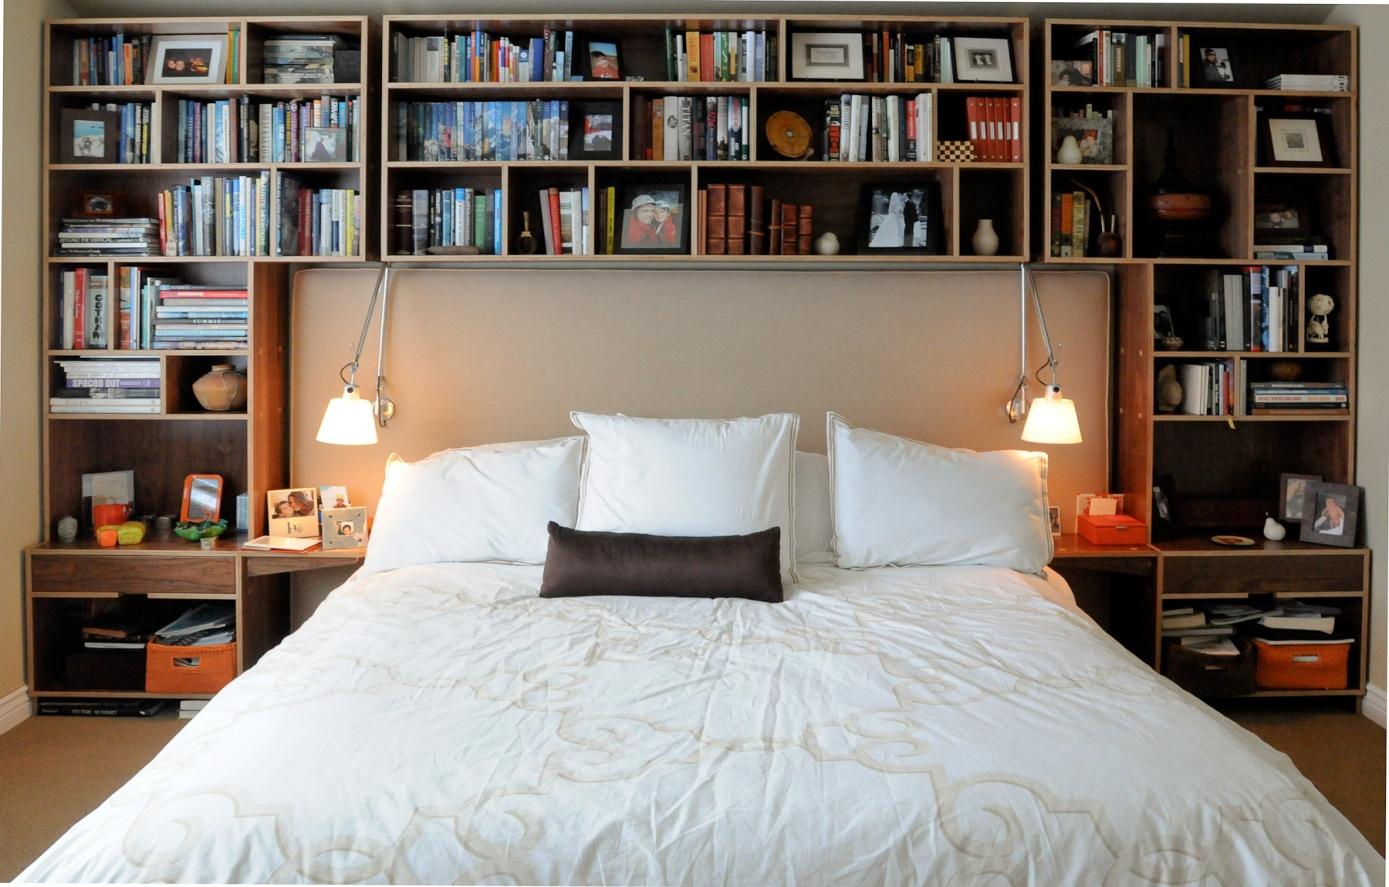 Bedroom with Bookshelf - Taskmasters